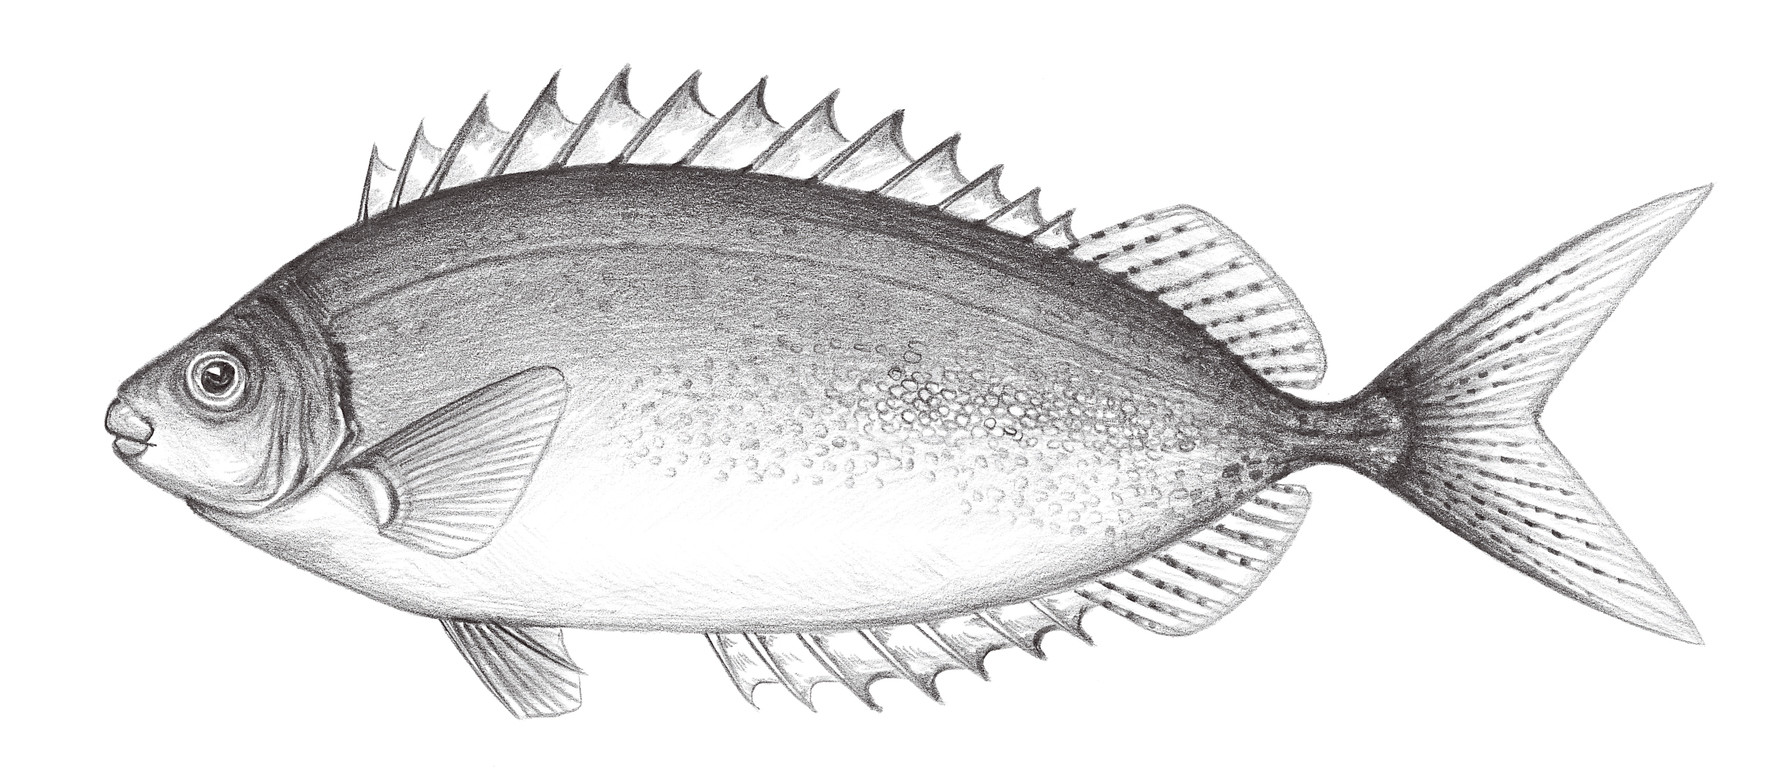 2271.	銀色籃子魚 Siganus argenteus (Quoy & Gaimard, 1825)